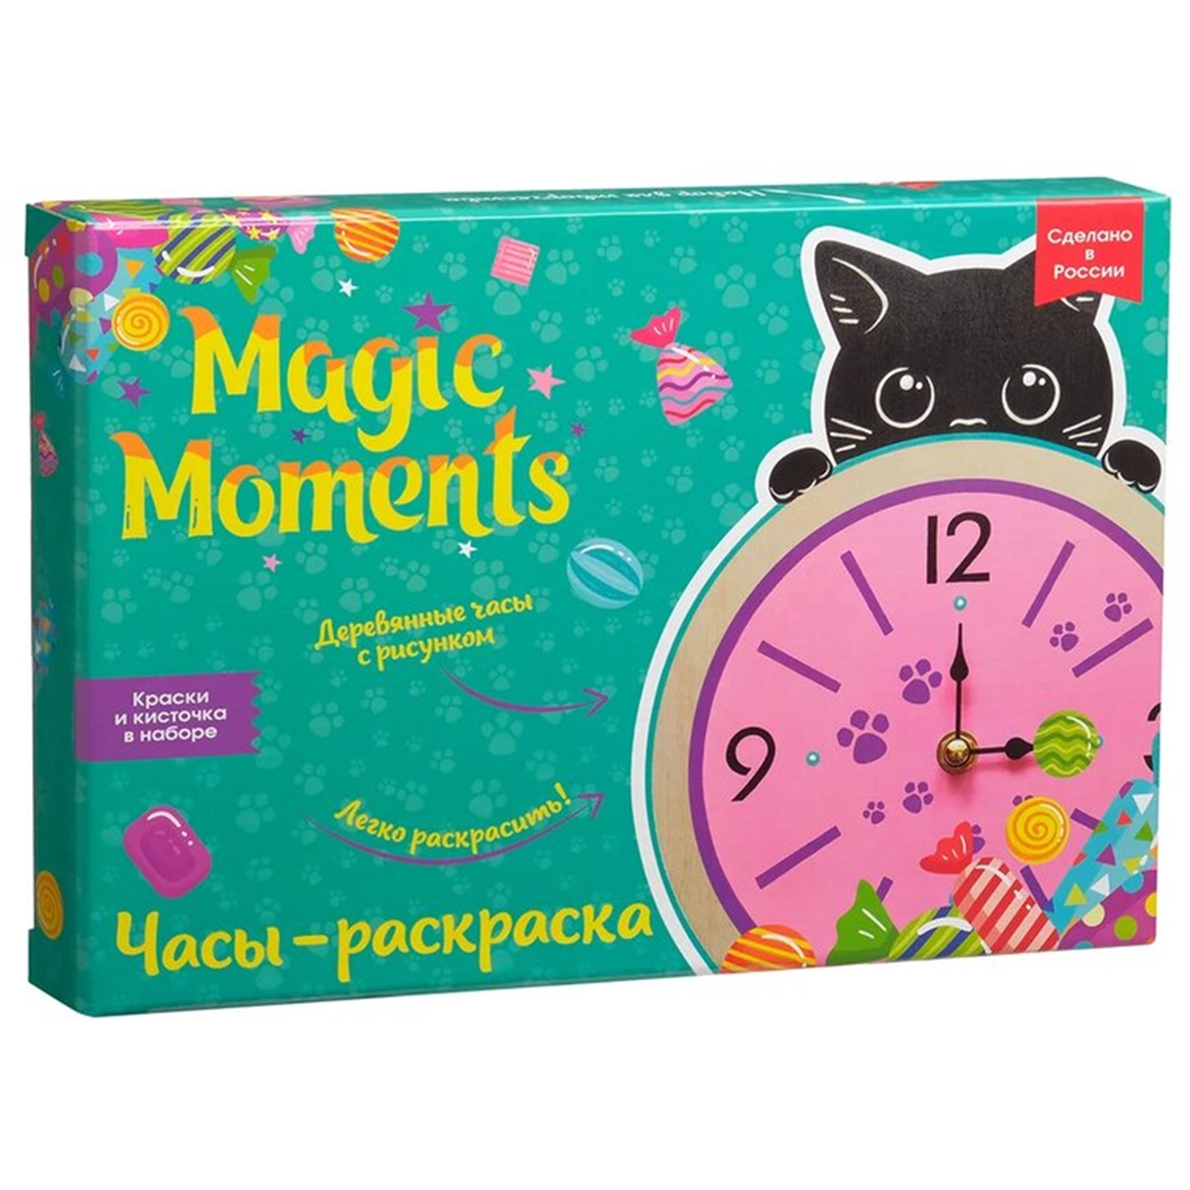 Сувенирный набор для творчества Magic Moments Часы-раскраска, Котик сувенир закладка magic time для книг из эпоксидного полимера 3 3 15см 75698